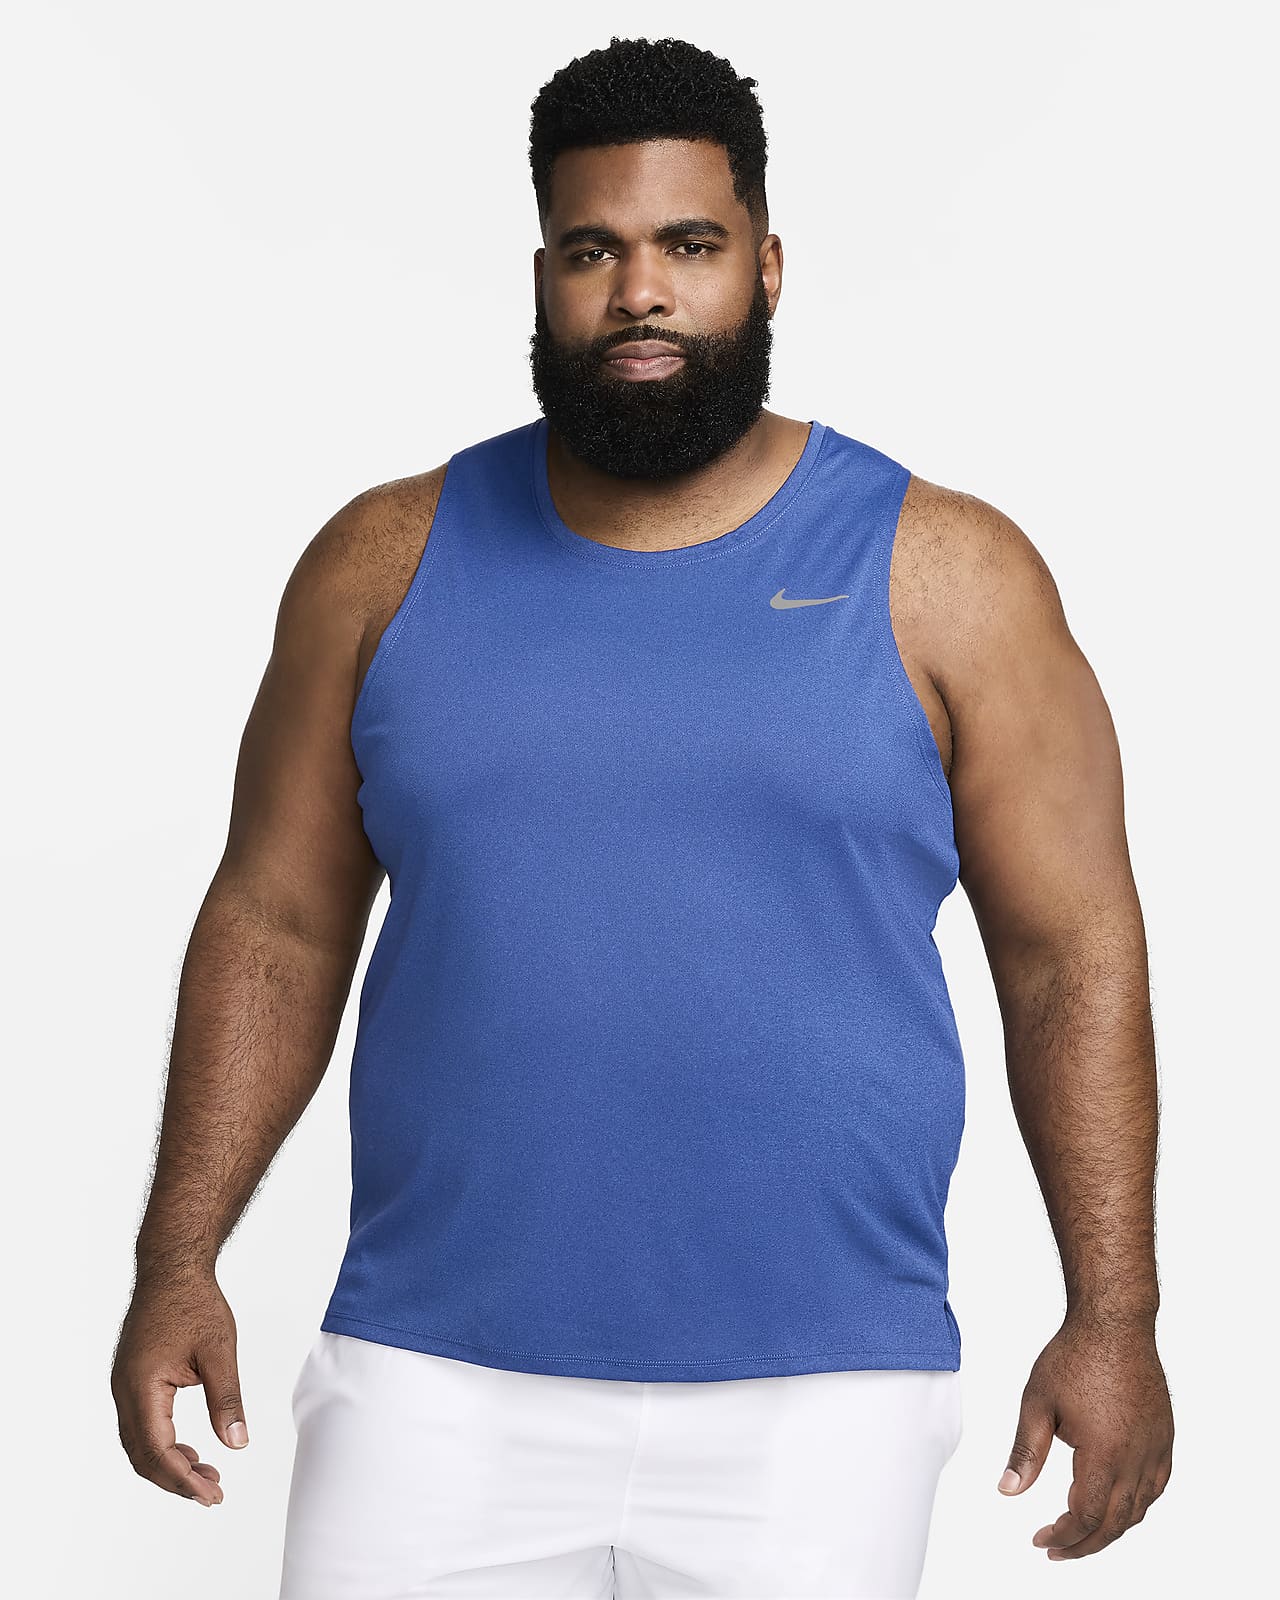  Mens Lightweight UPF 50 Sleeveless Workout Shirts